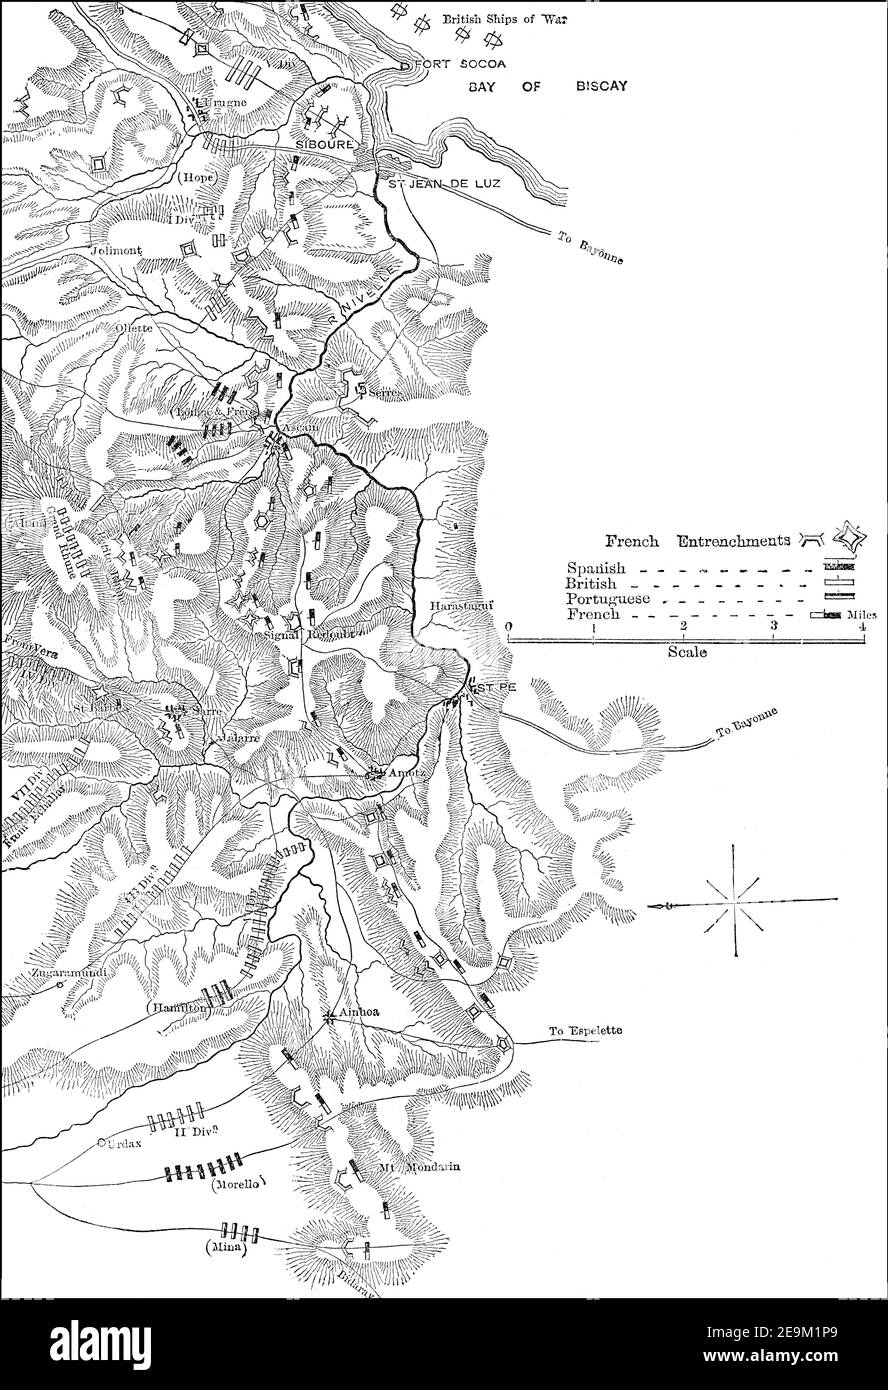 Bataille de Nivelle le 10 novembre 1813, guerre péninsulaire, des batailles britanniques sur terre et mer, par James Grant Banque D'Images